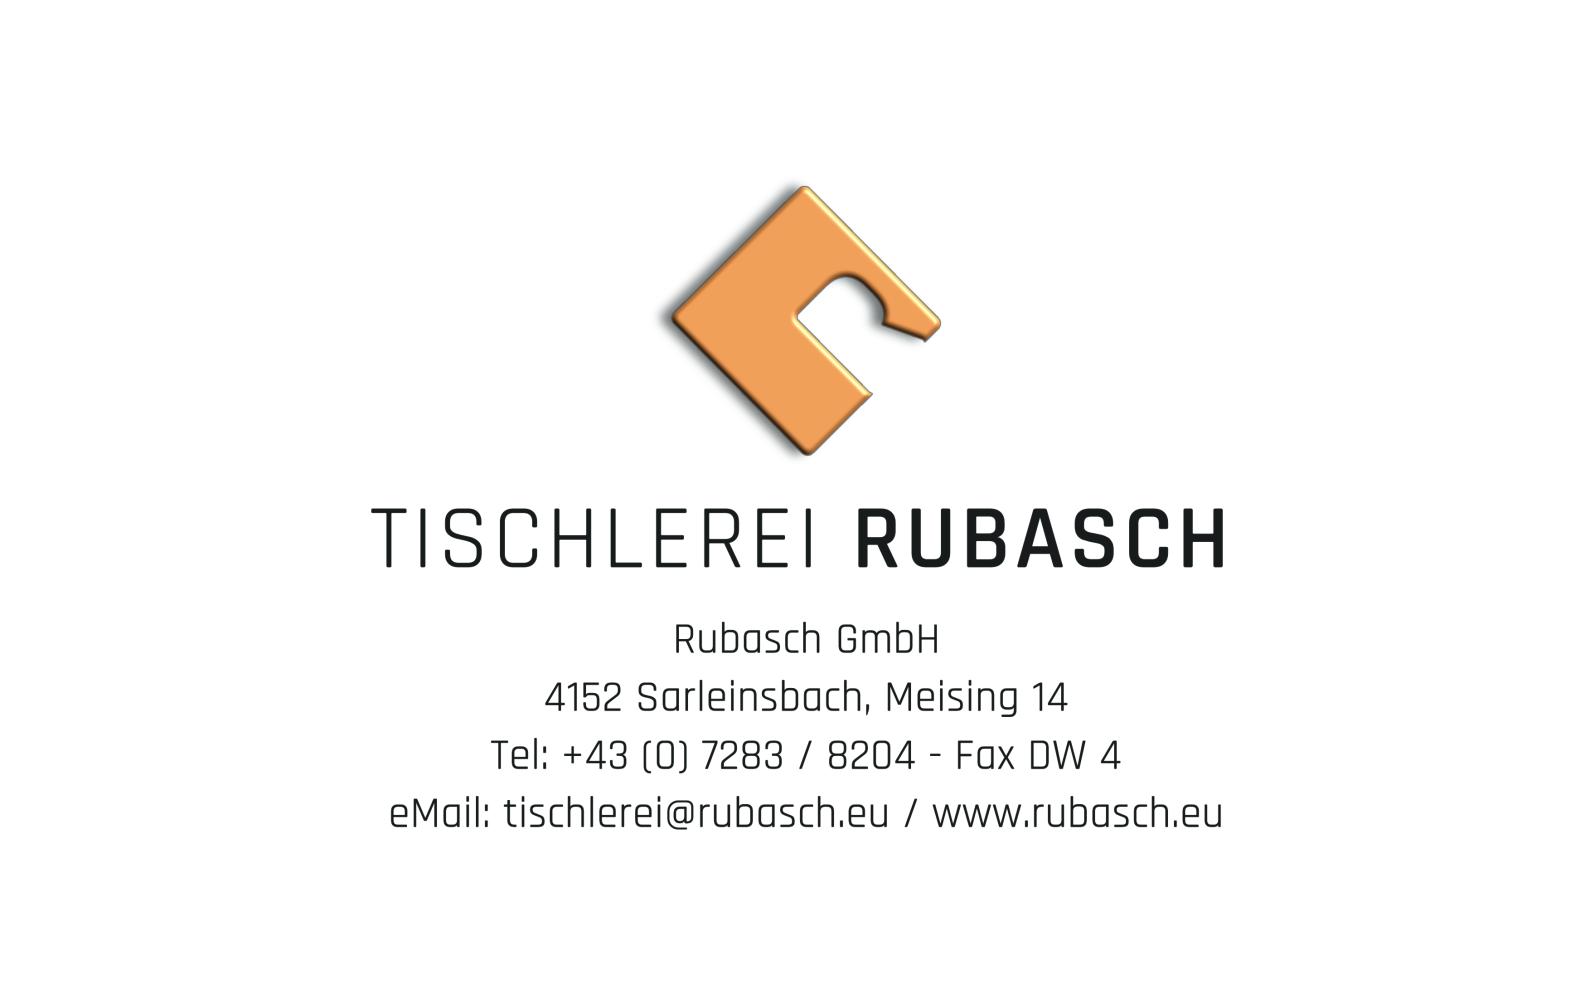 Rubasch GmbH Headerbild